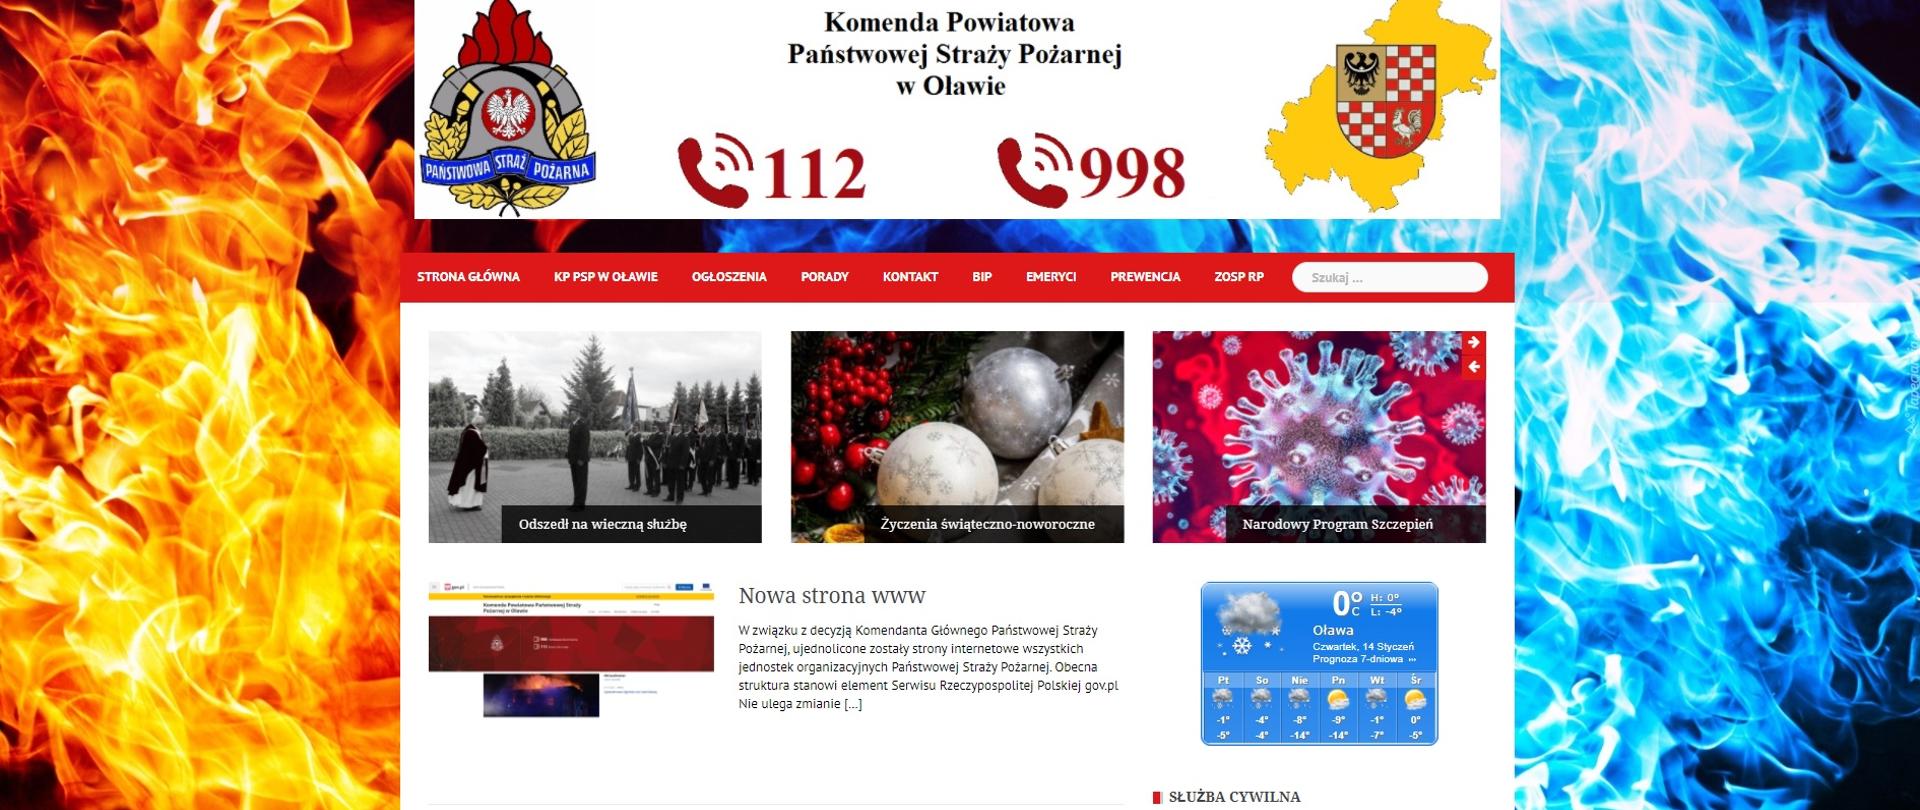 na zdjęciu widać zrzut ekranu z widoczną archiwalną stroną www Komendy Powiatowej Państwowej Straży Pożarnej w Oławie